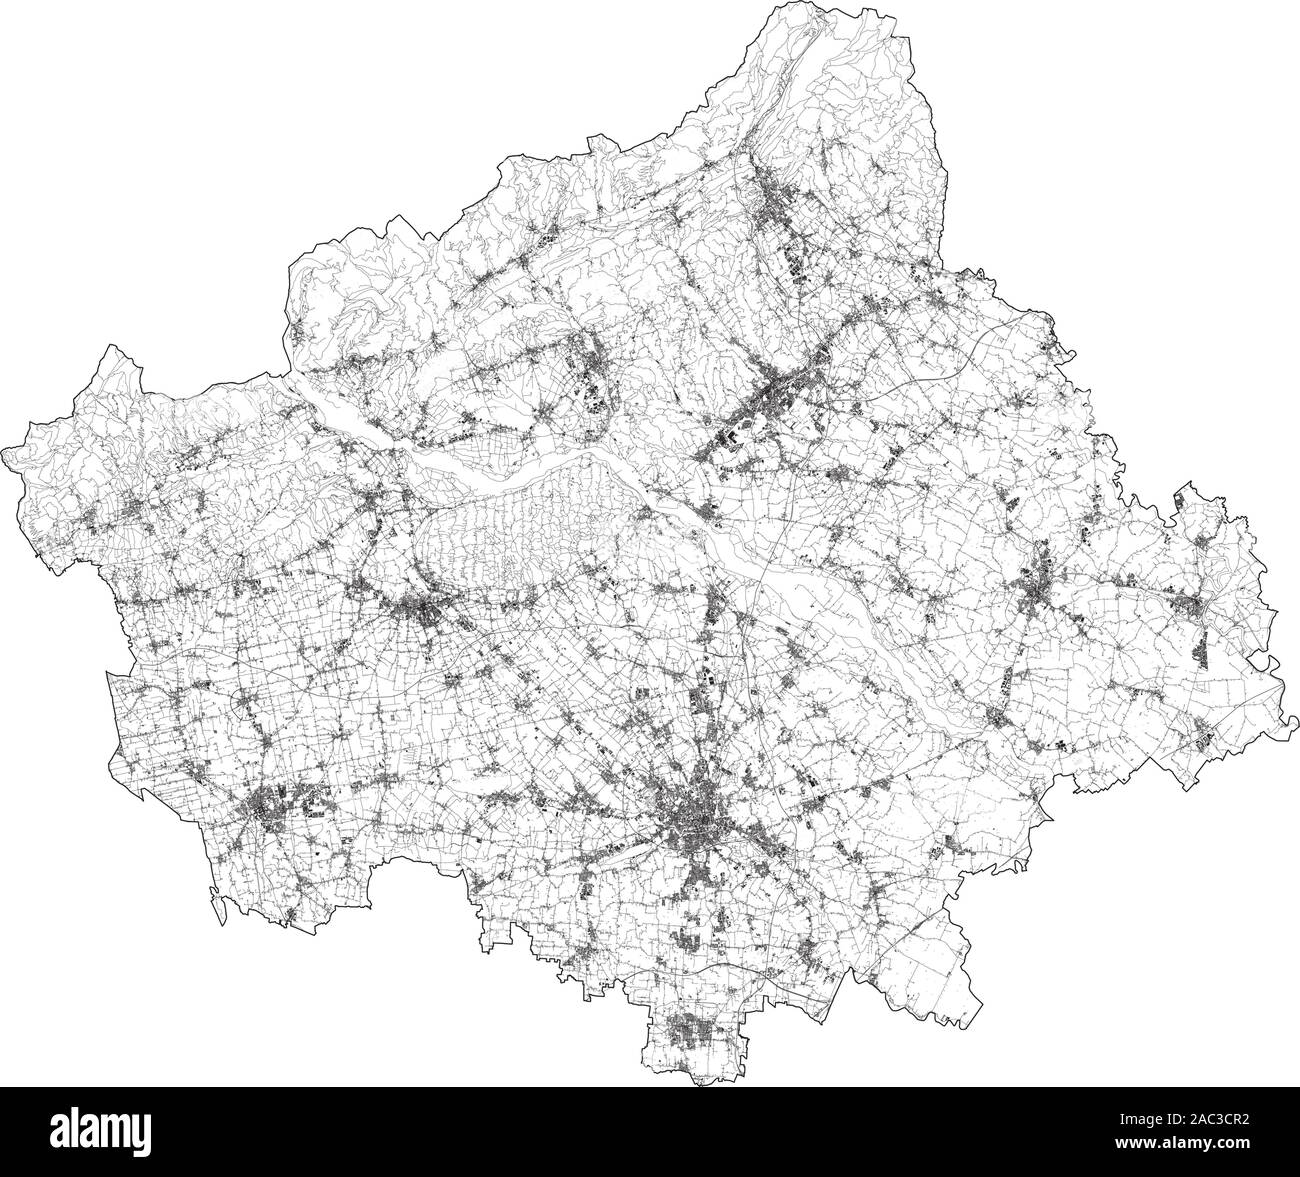 Sat-Karte der Provinz Treviso, Städte und Straßen, Gebäude und Straßen der Umgebung. Venetien, Italien. Karte Straßen, Ringstraßen Stock Vektor